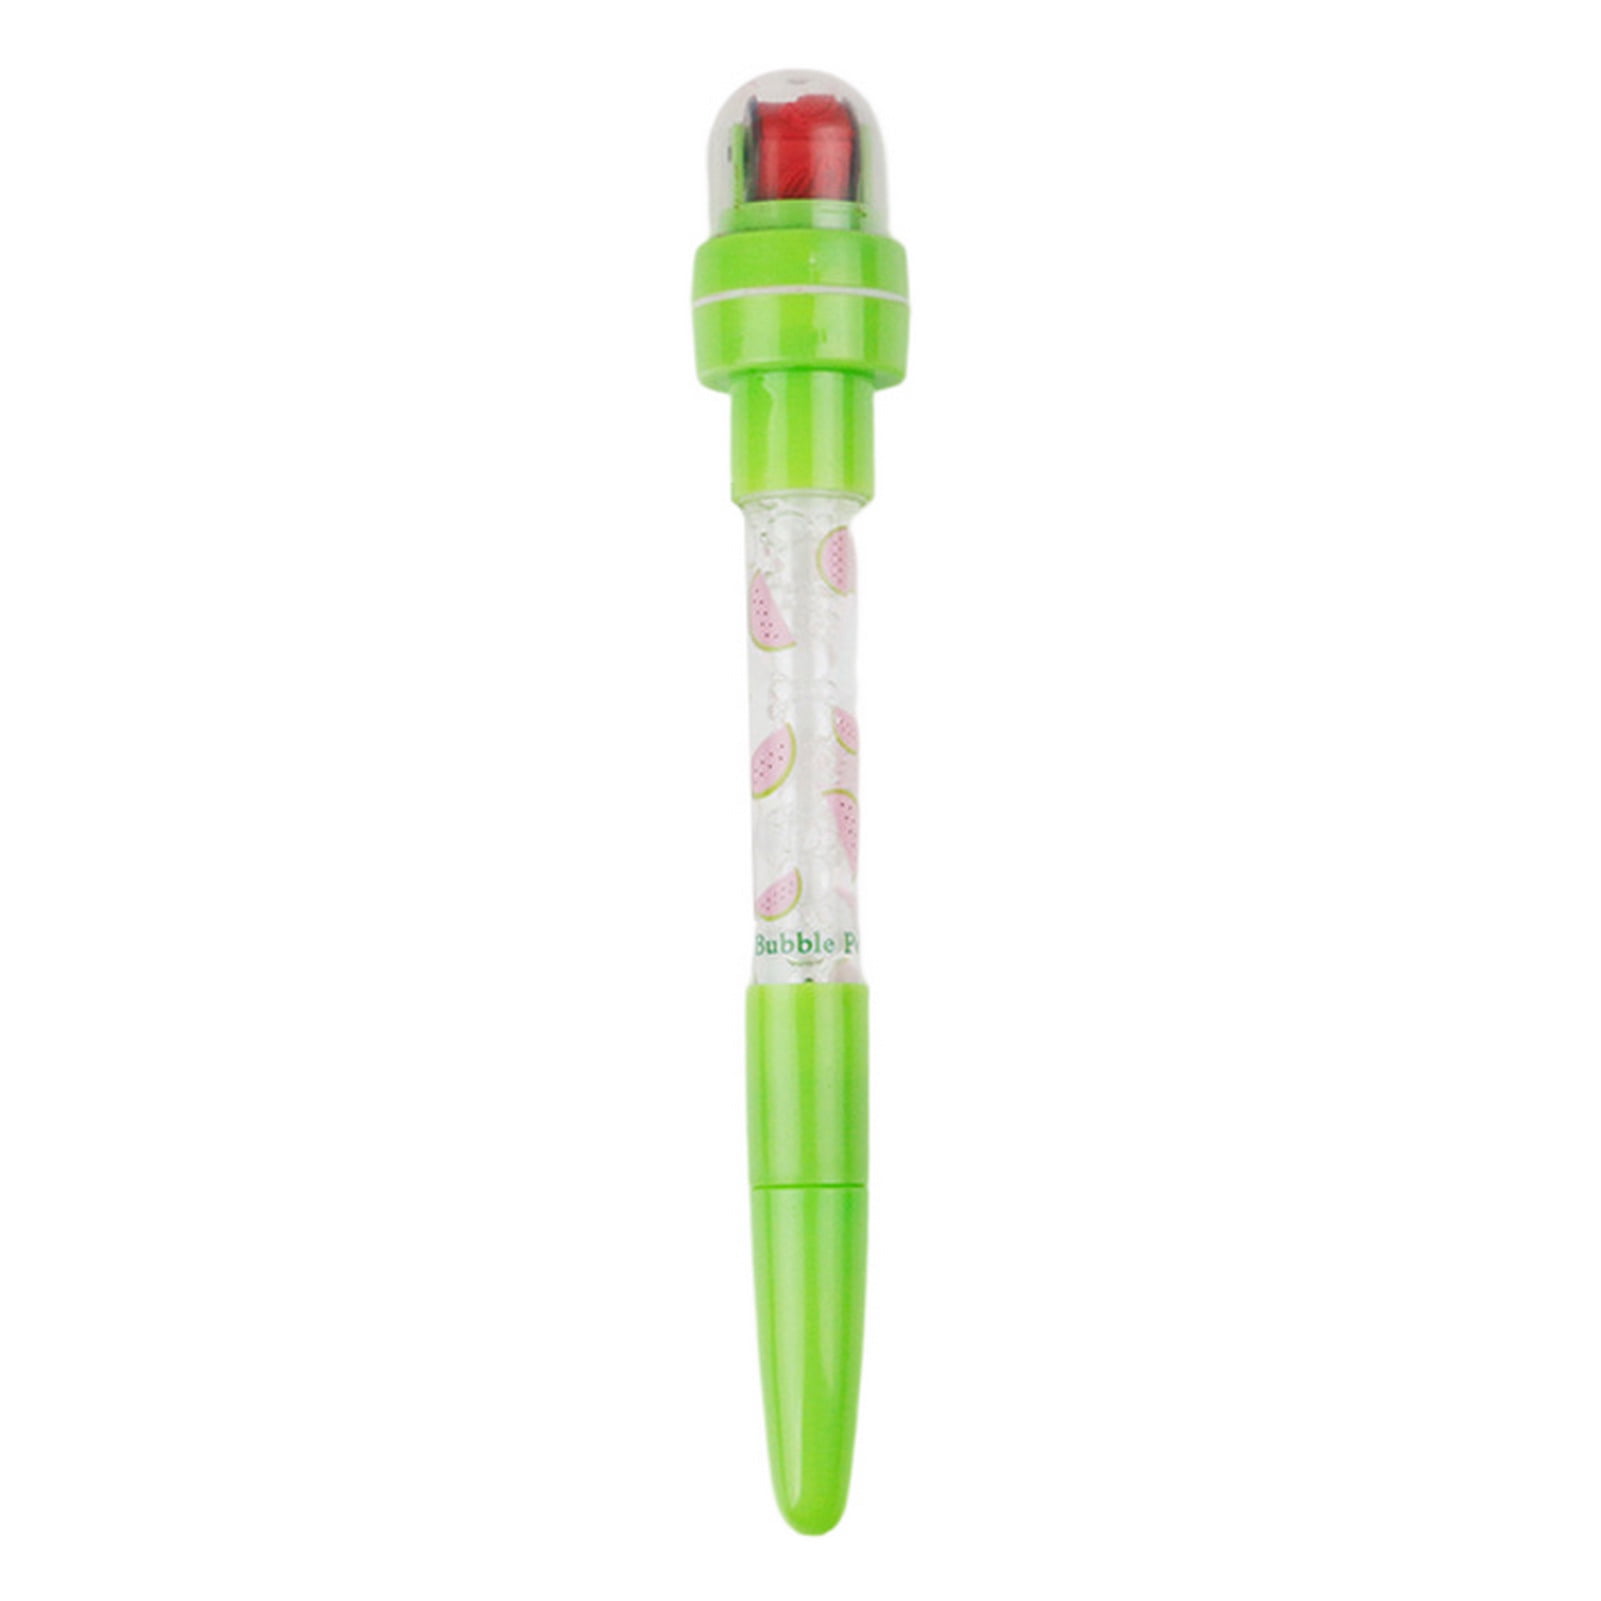 VEAREAR Gel Pen 4 in 1 Multi-functional Bubble Maker Roller Stamper  Stationery Cartoon Fruit Pattern Plastic Writing Pen School Supplies 